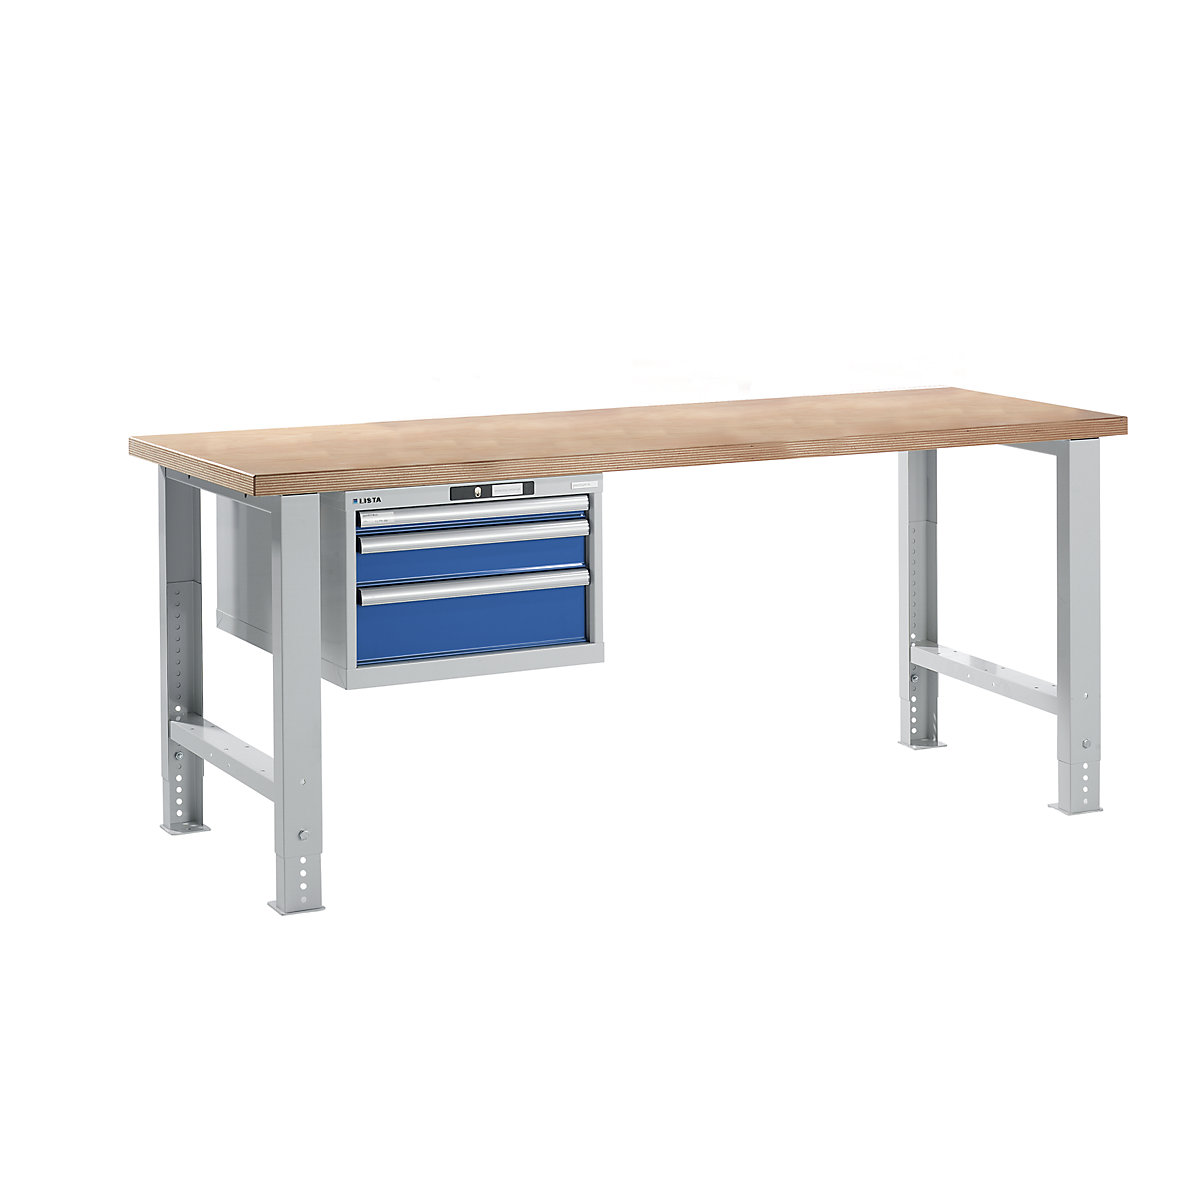 Stół warsztatowy w systemie modułowym – LISTA, wys. 740 – 1090 mm, szafka wisząca, 3 szuflady, niebieski gencjanowy, szer. stołu 2000 mm-13